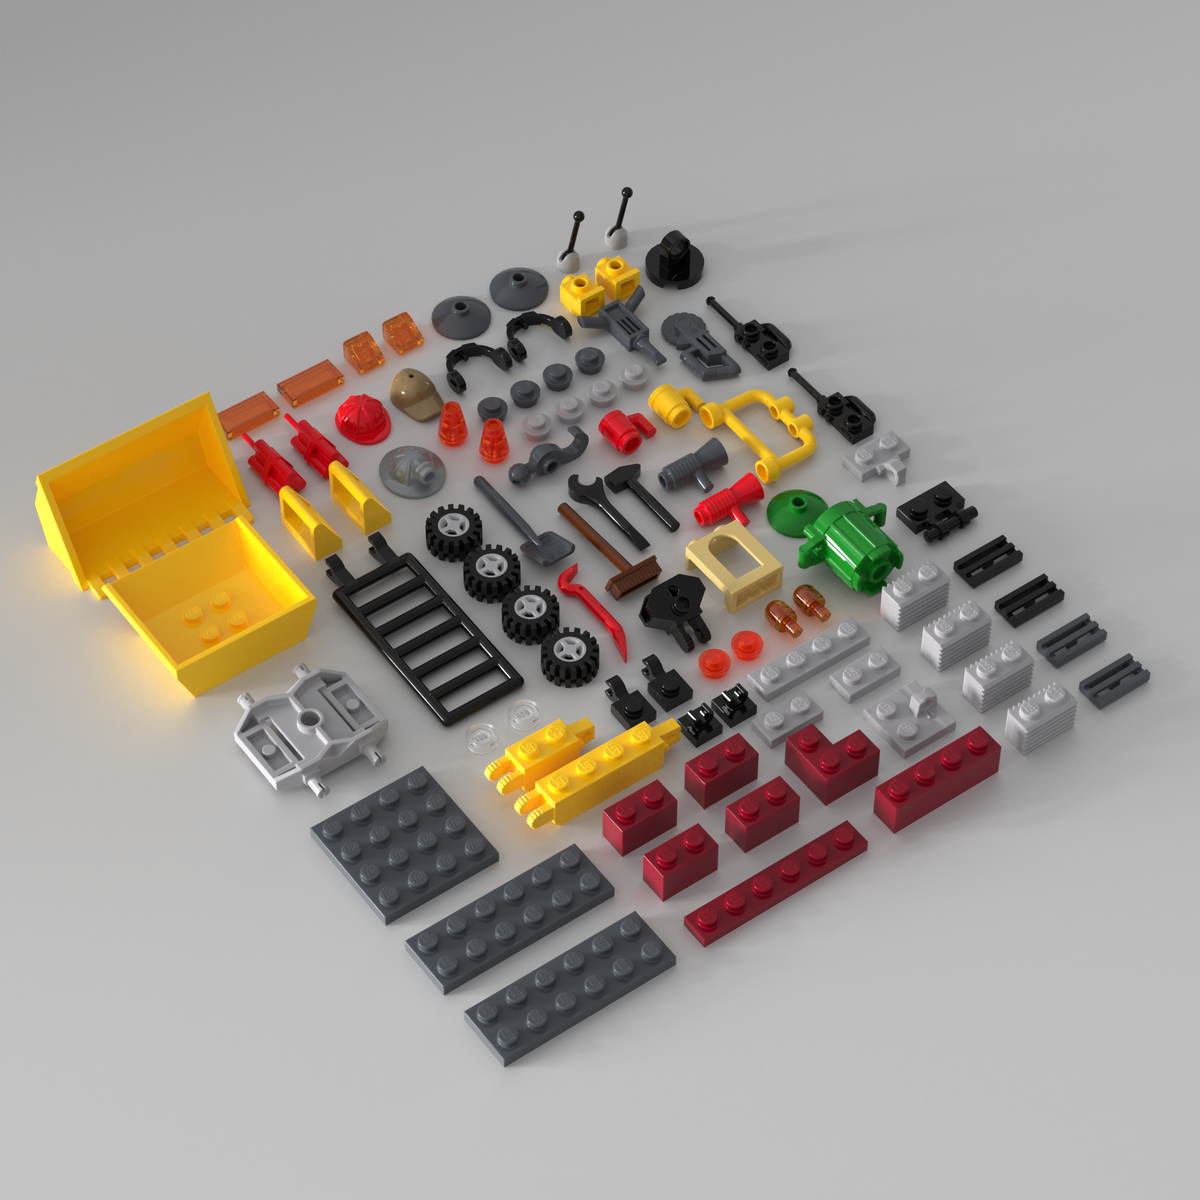 Весь мир деталей LEGO – это одна большая стройка. А на стройке не обойтись без техники, рабочих касок, сигнальных огней и, конечно же, отбойного молотка!